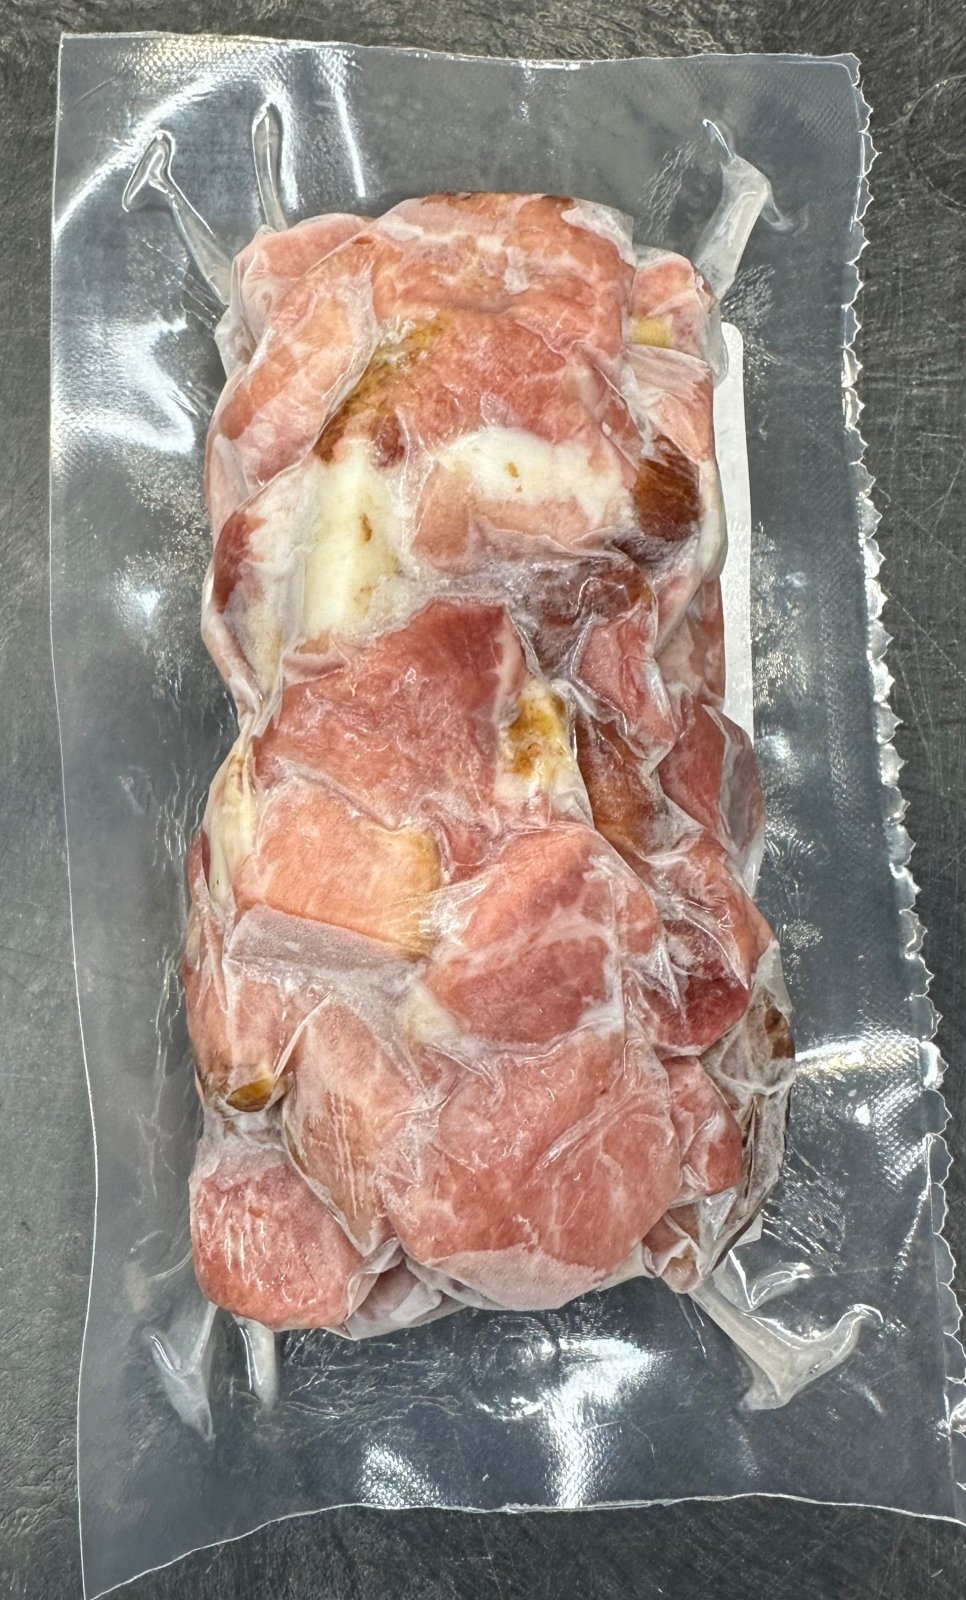 Pasture Raised Pork Uncured Sugar Free Diced Ham (12 oz)